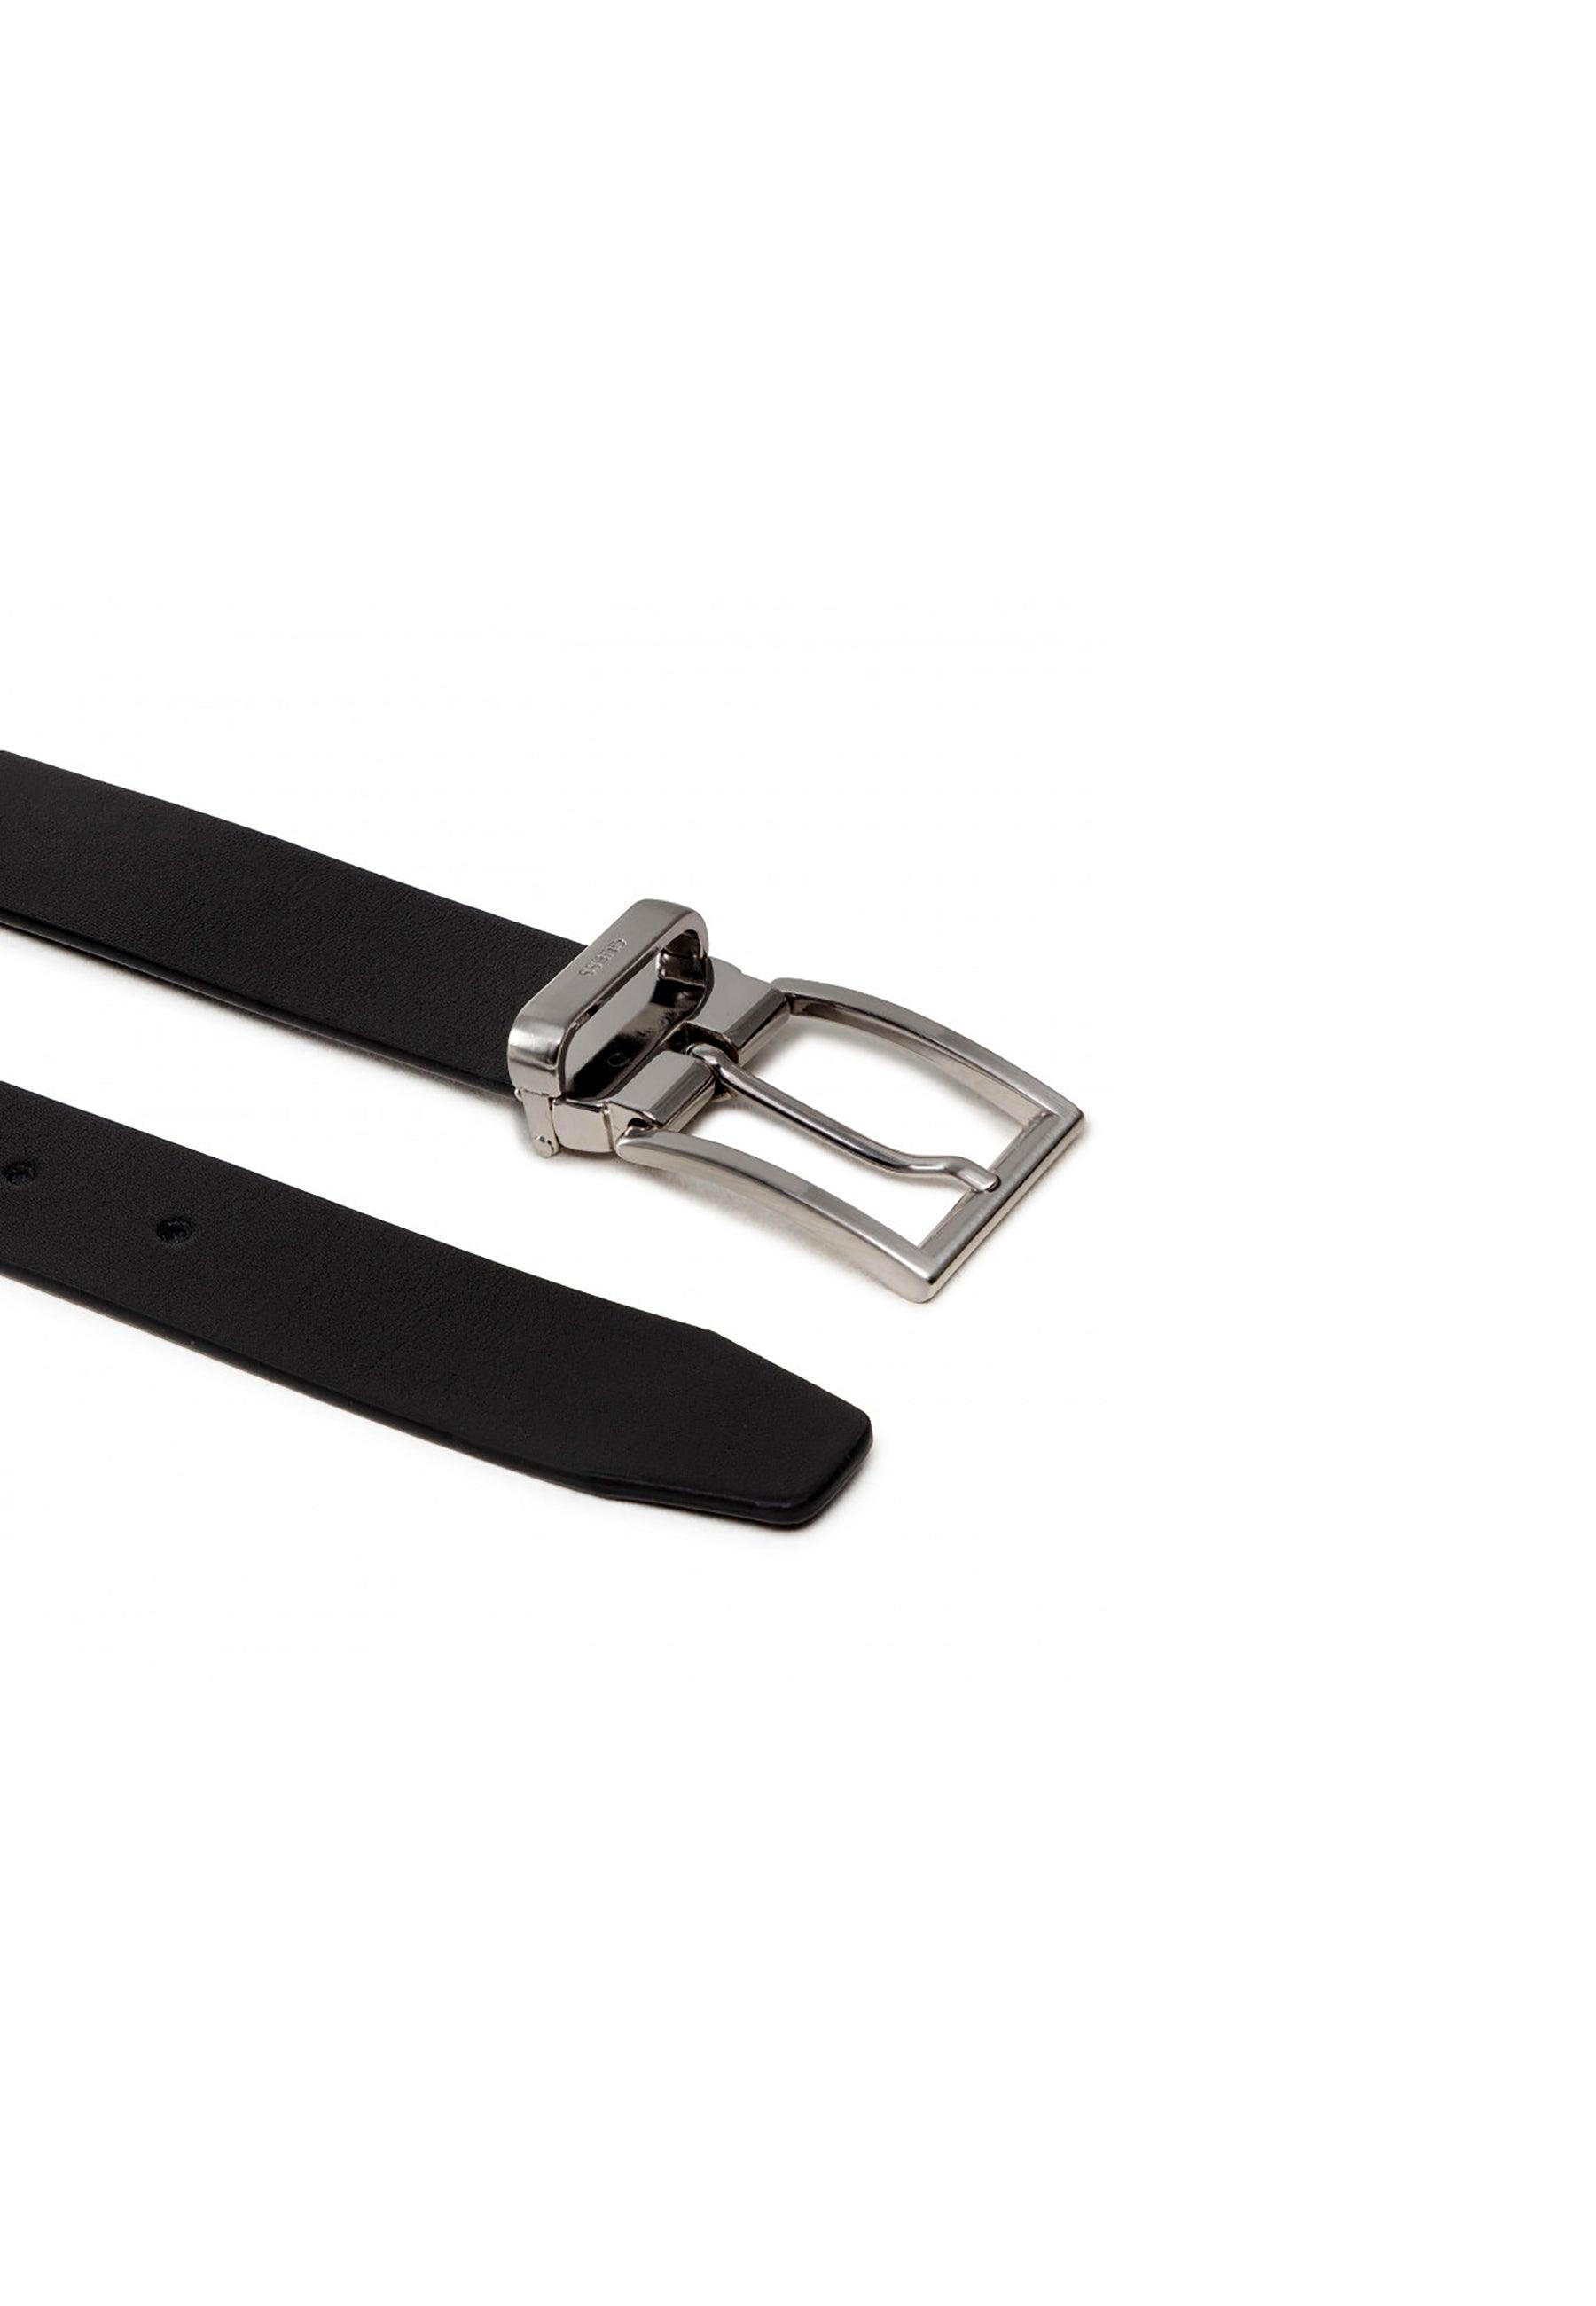 GUESS Cintura Pelle Uomo Black BM7544LEA35 - Sandrini Calzature e Abbigliamento